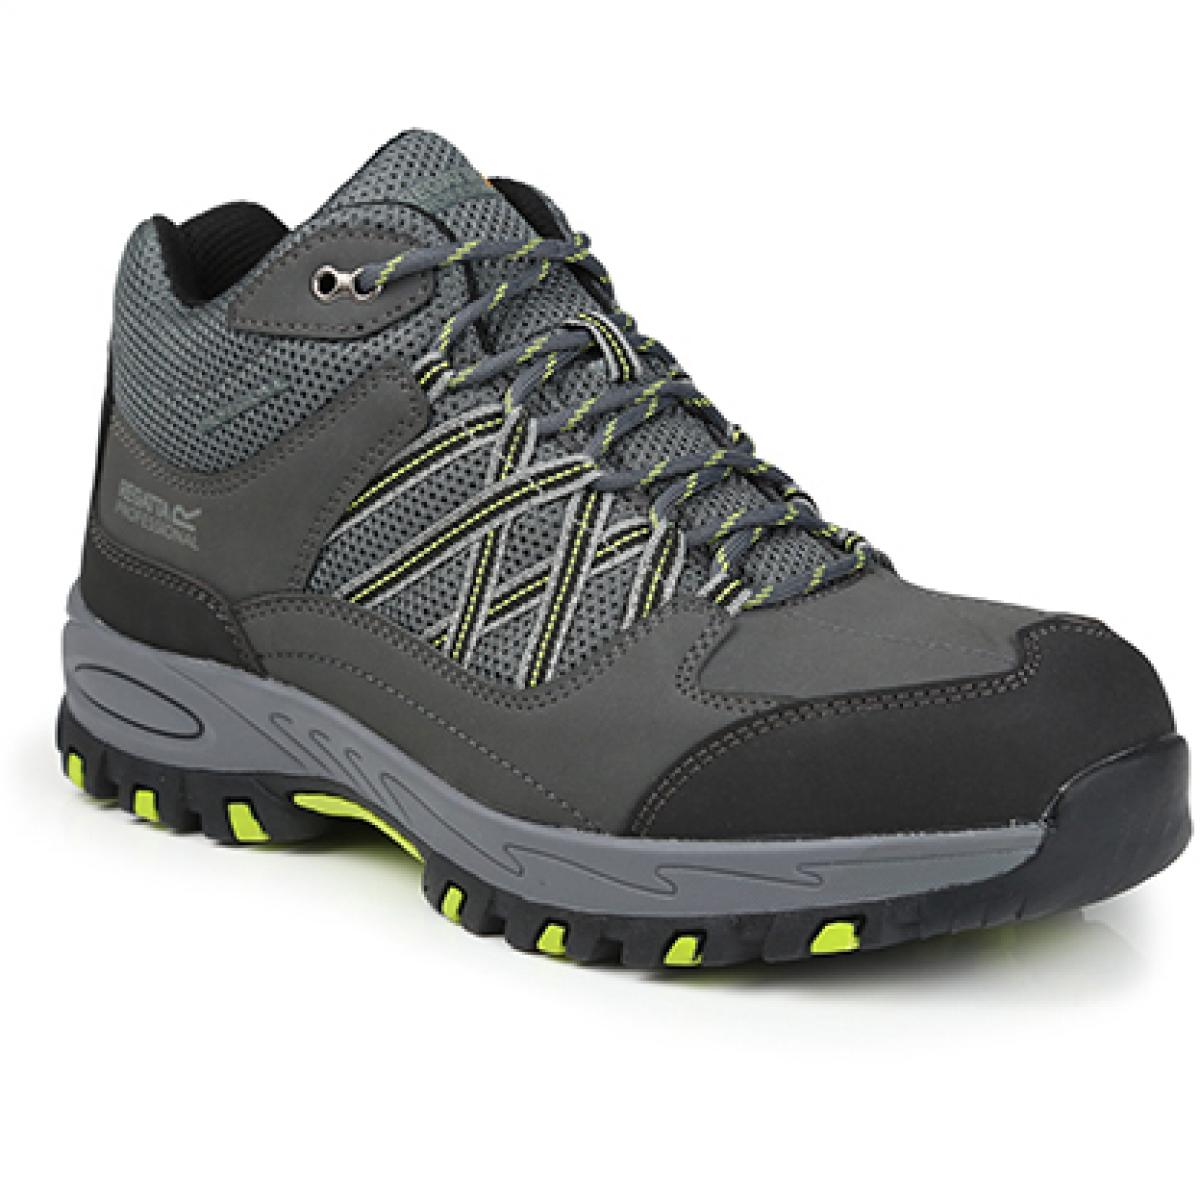 Hersteller: Regatta Safety Footwear Herstellernummer: TRK200 Artikelbezeichnung: Sandstone SB Safety Hiker - Arbeitsschuhe Farbe: Briar/Lime